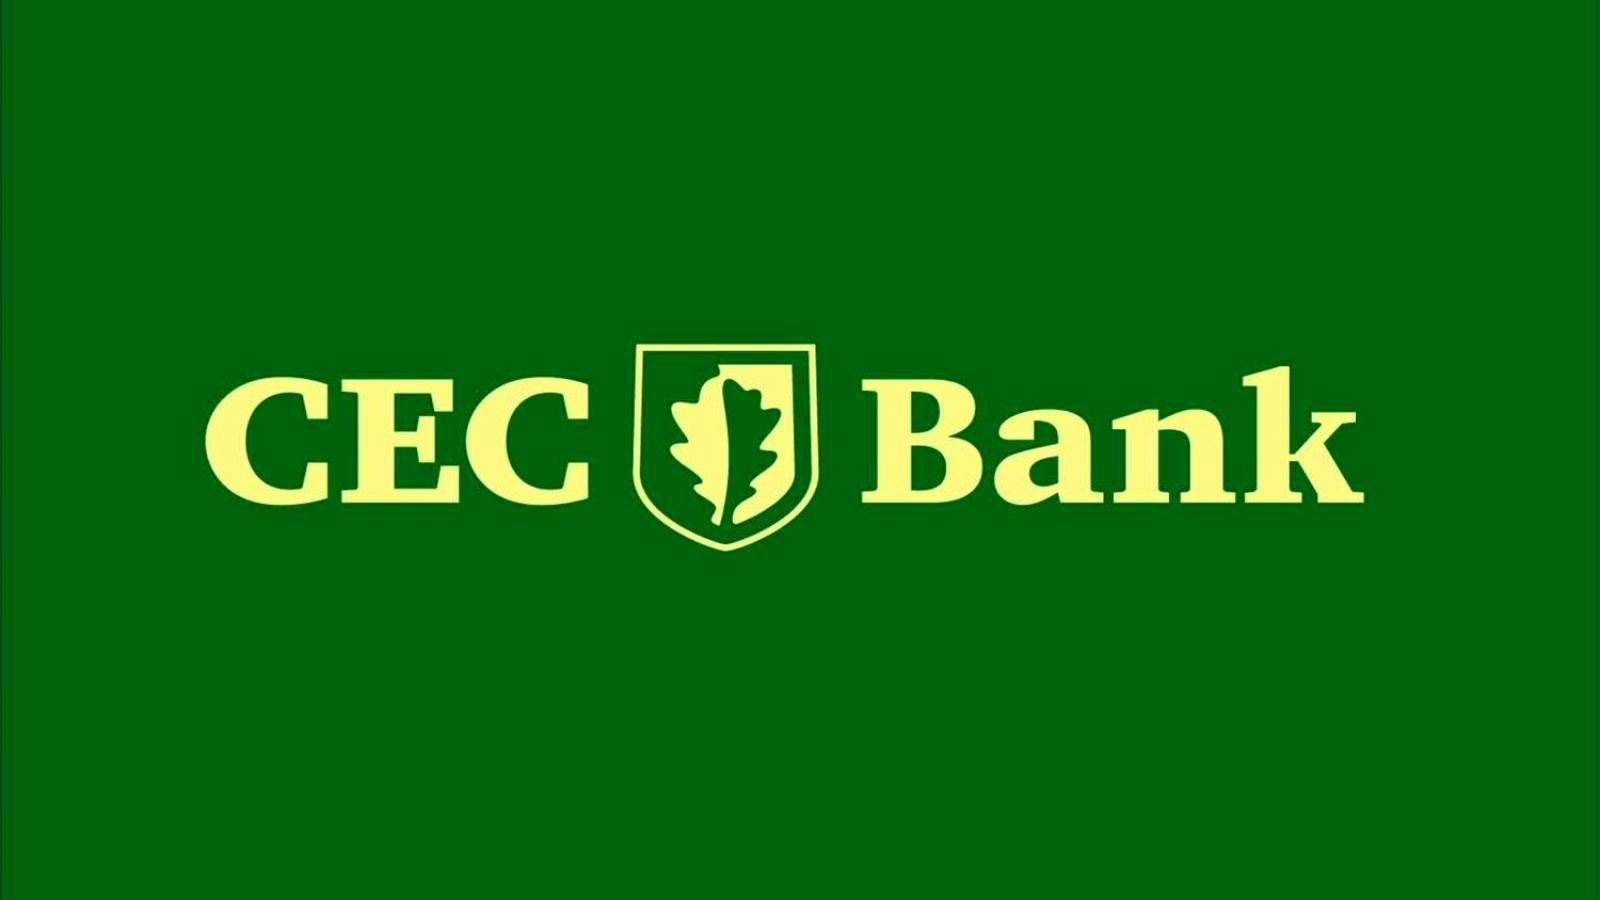 CEC Bank LAST MINUTE Ogłoszenie Decyzja Klienci